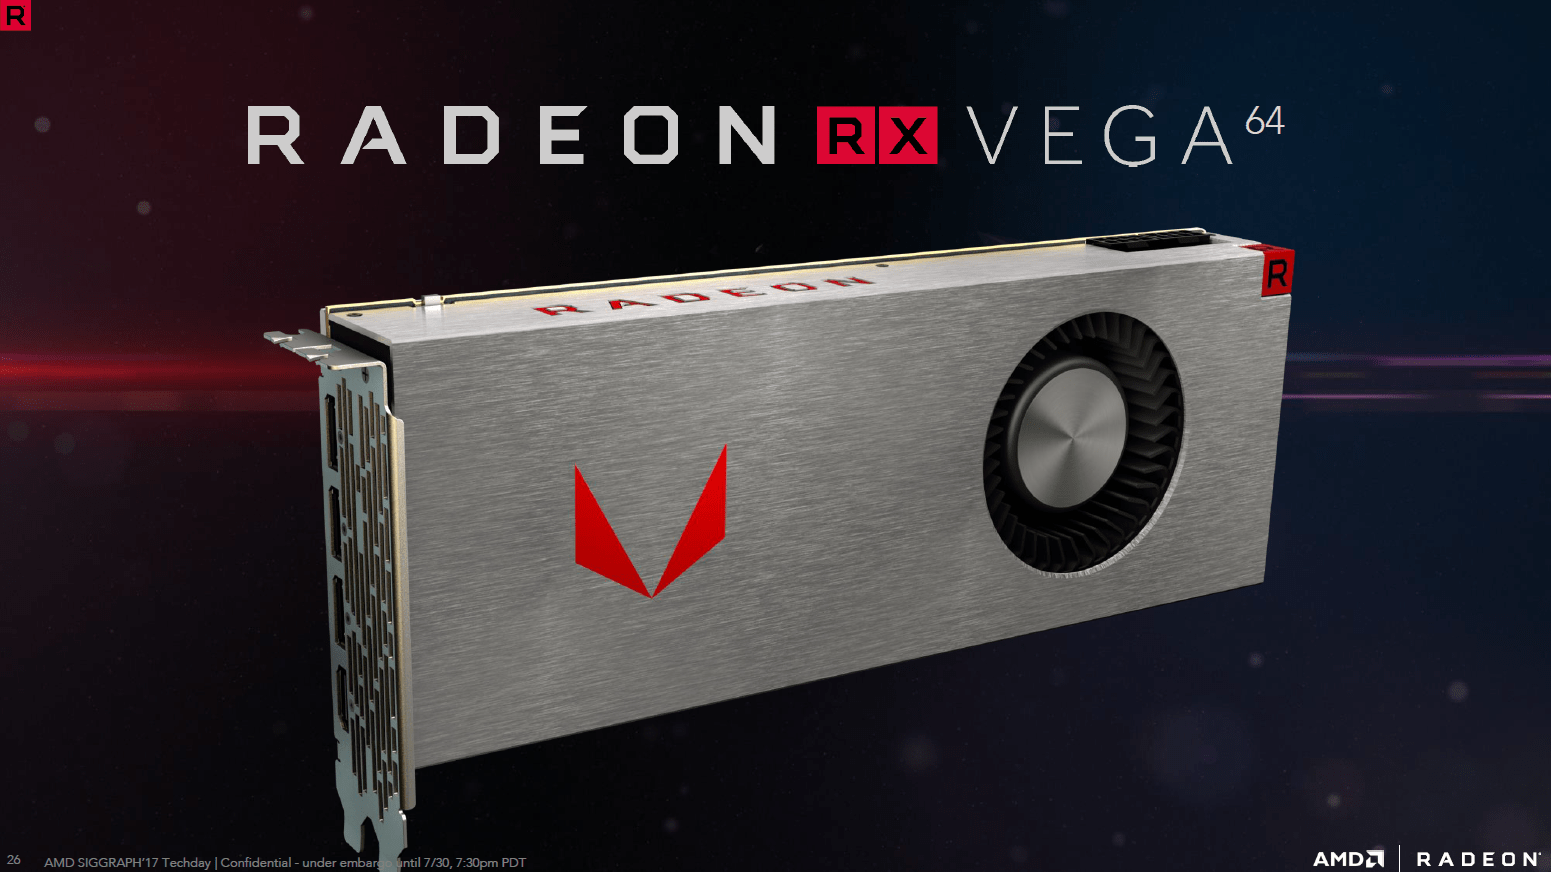 Die Präsentation der Radeon RX Vega